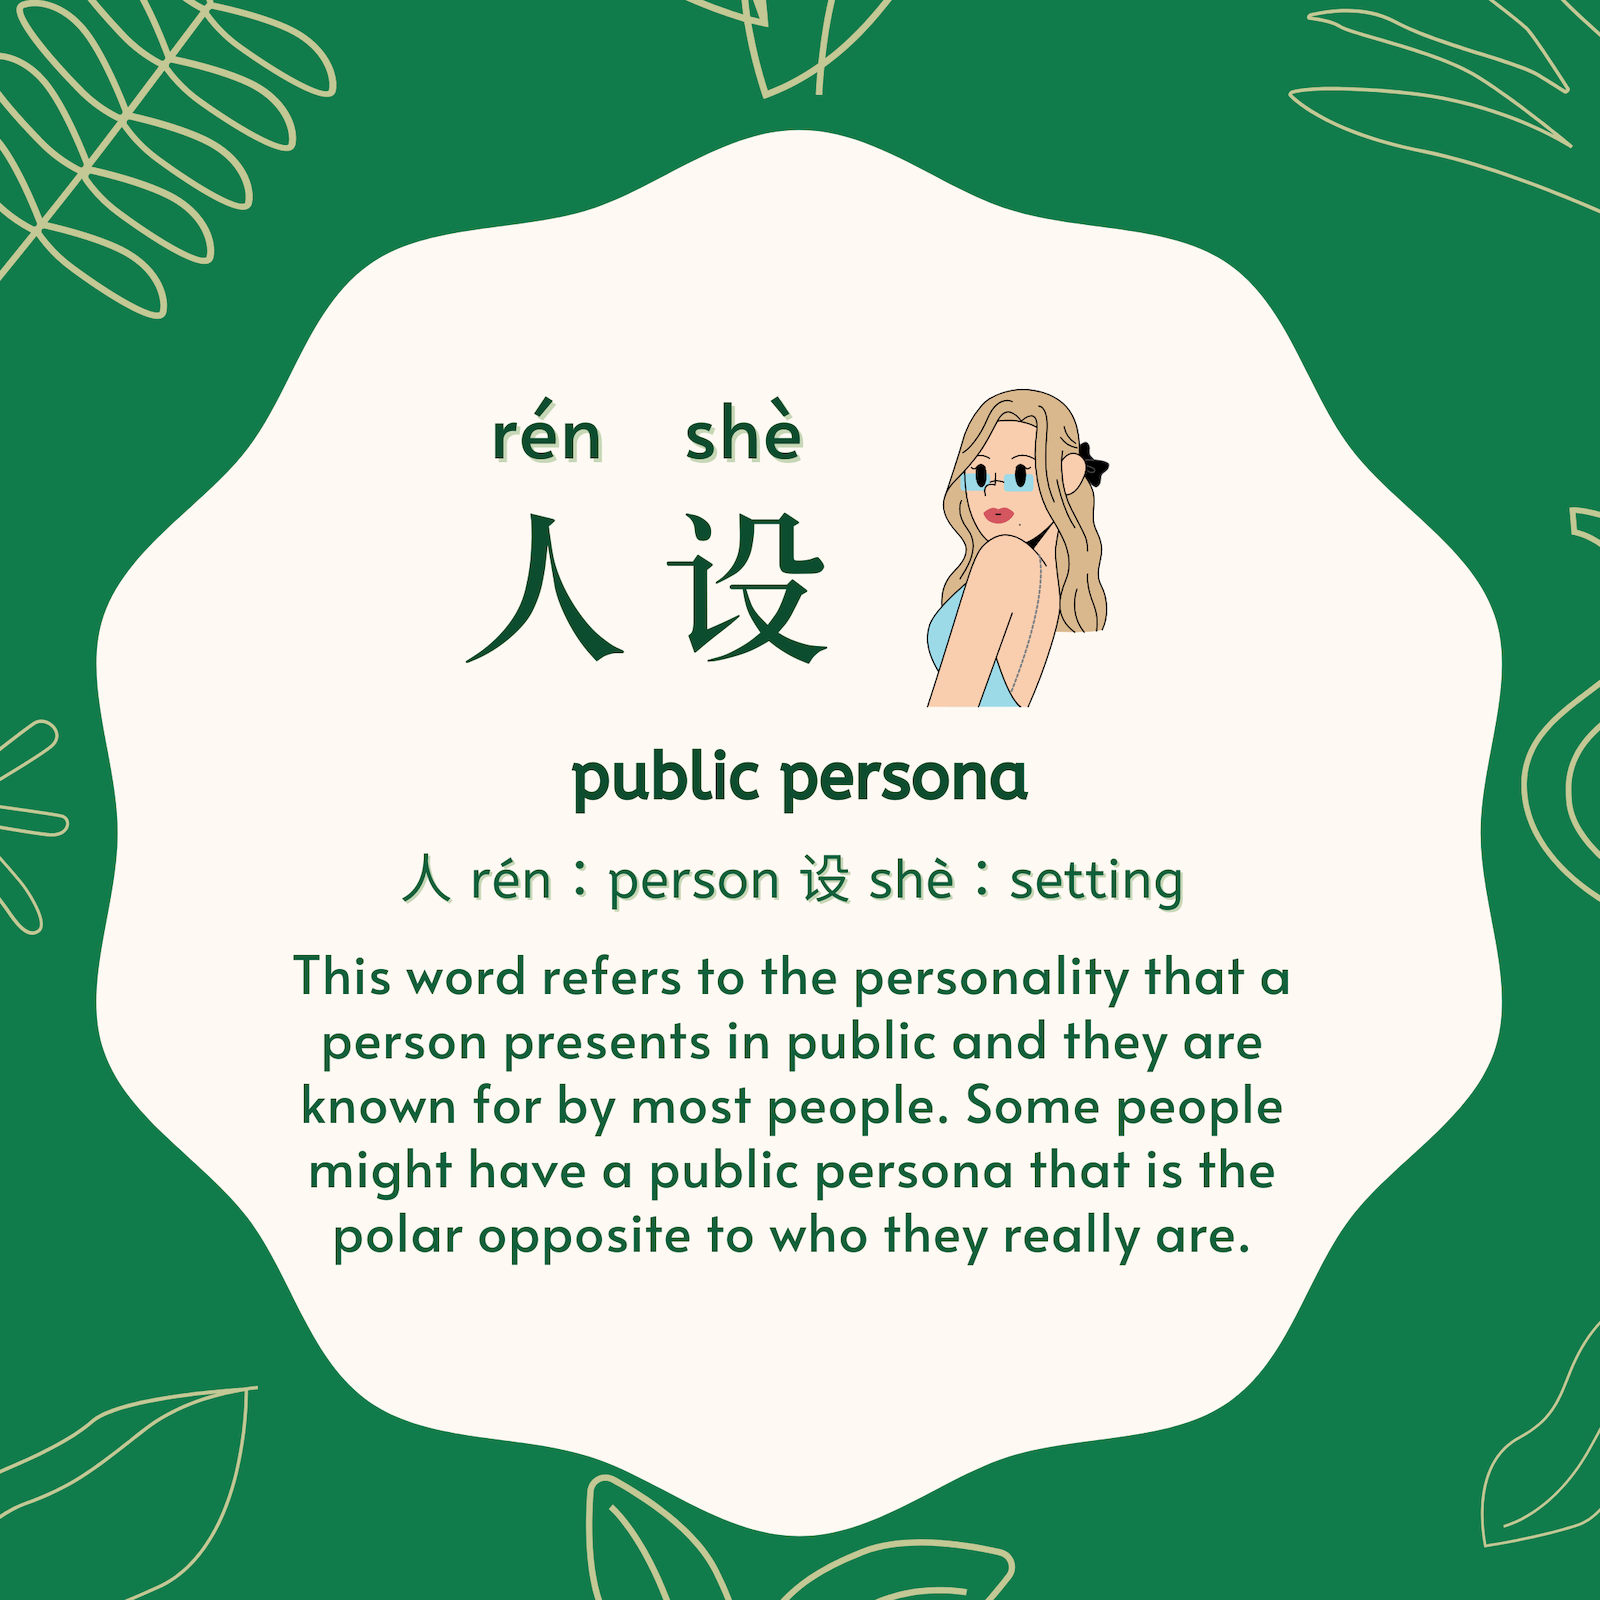 人设 rén shè, public persona. 人 rén：person 设 shè：setting. The phrase “public persona” refers to the personality that a person presents in public and they are known for by most people.  Some people might have a public persona that is the polar opposite to who they really are. 